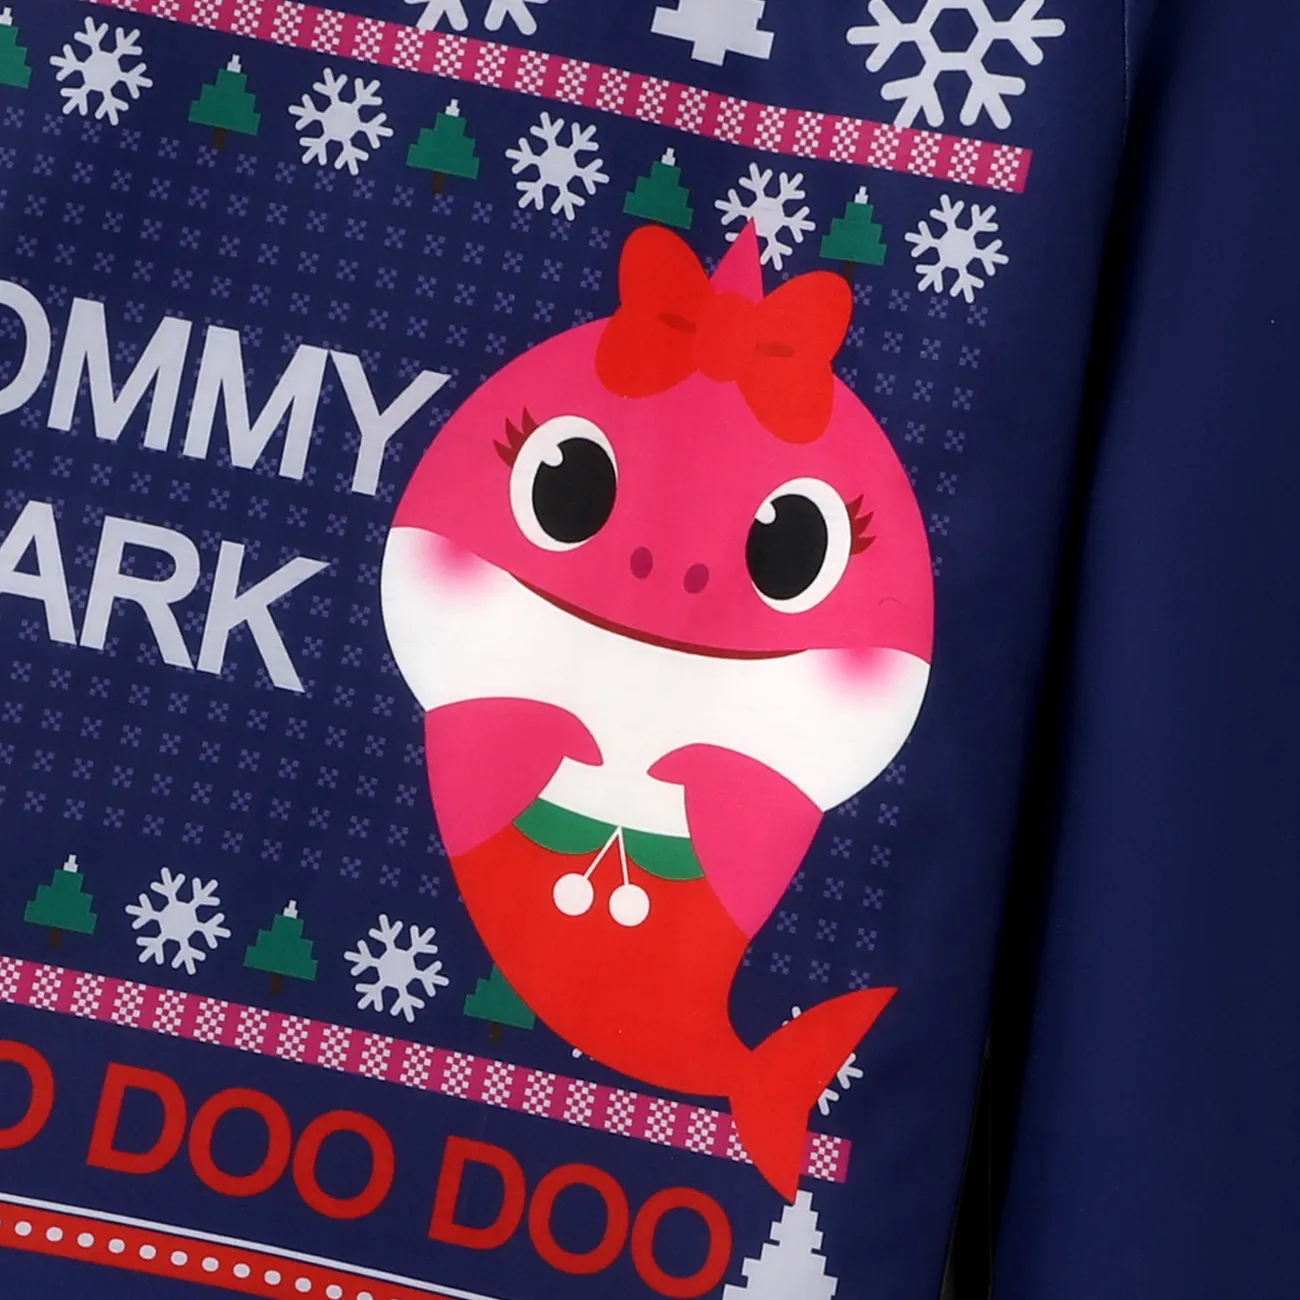 Baby Shark Christmas Family Matching Character Print Long-sleeve Top and Pants Pajamas Sets (Flame Resistant) DeepBlue big image 1